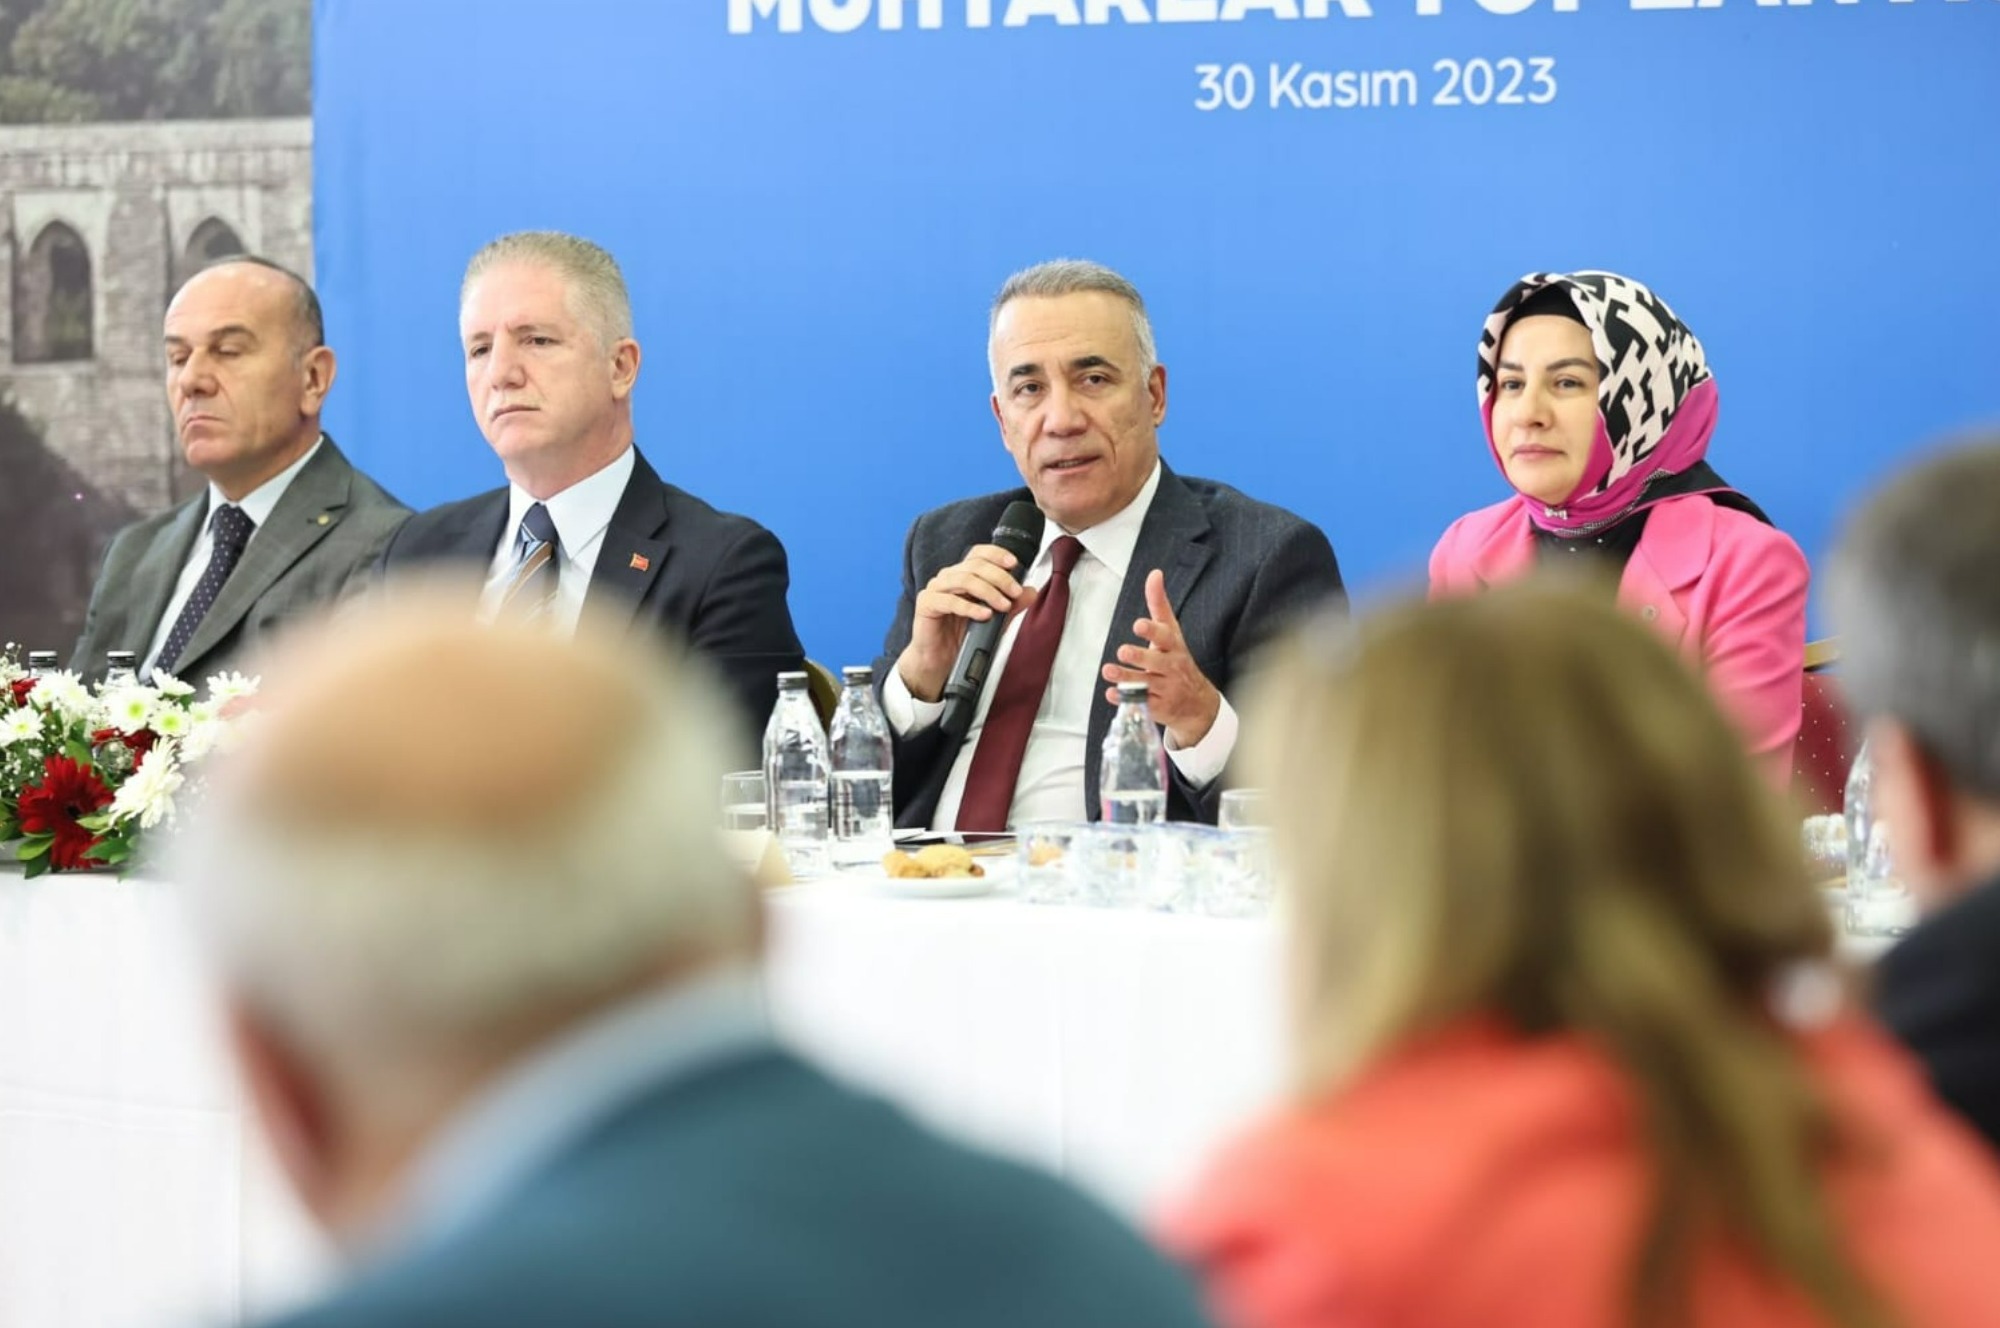 Sultangazi Muhtarlar Toplantısı, Sultangazi Belediye Başkanı Av. Abdurrahman Dursun ve İstanbul Valisi Davut Gül’ün katılımıyla gerçekleşti